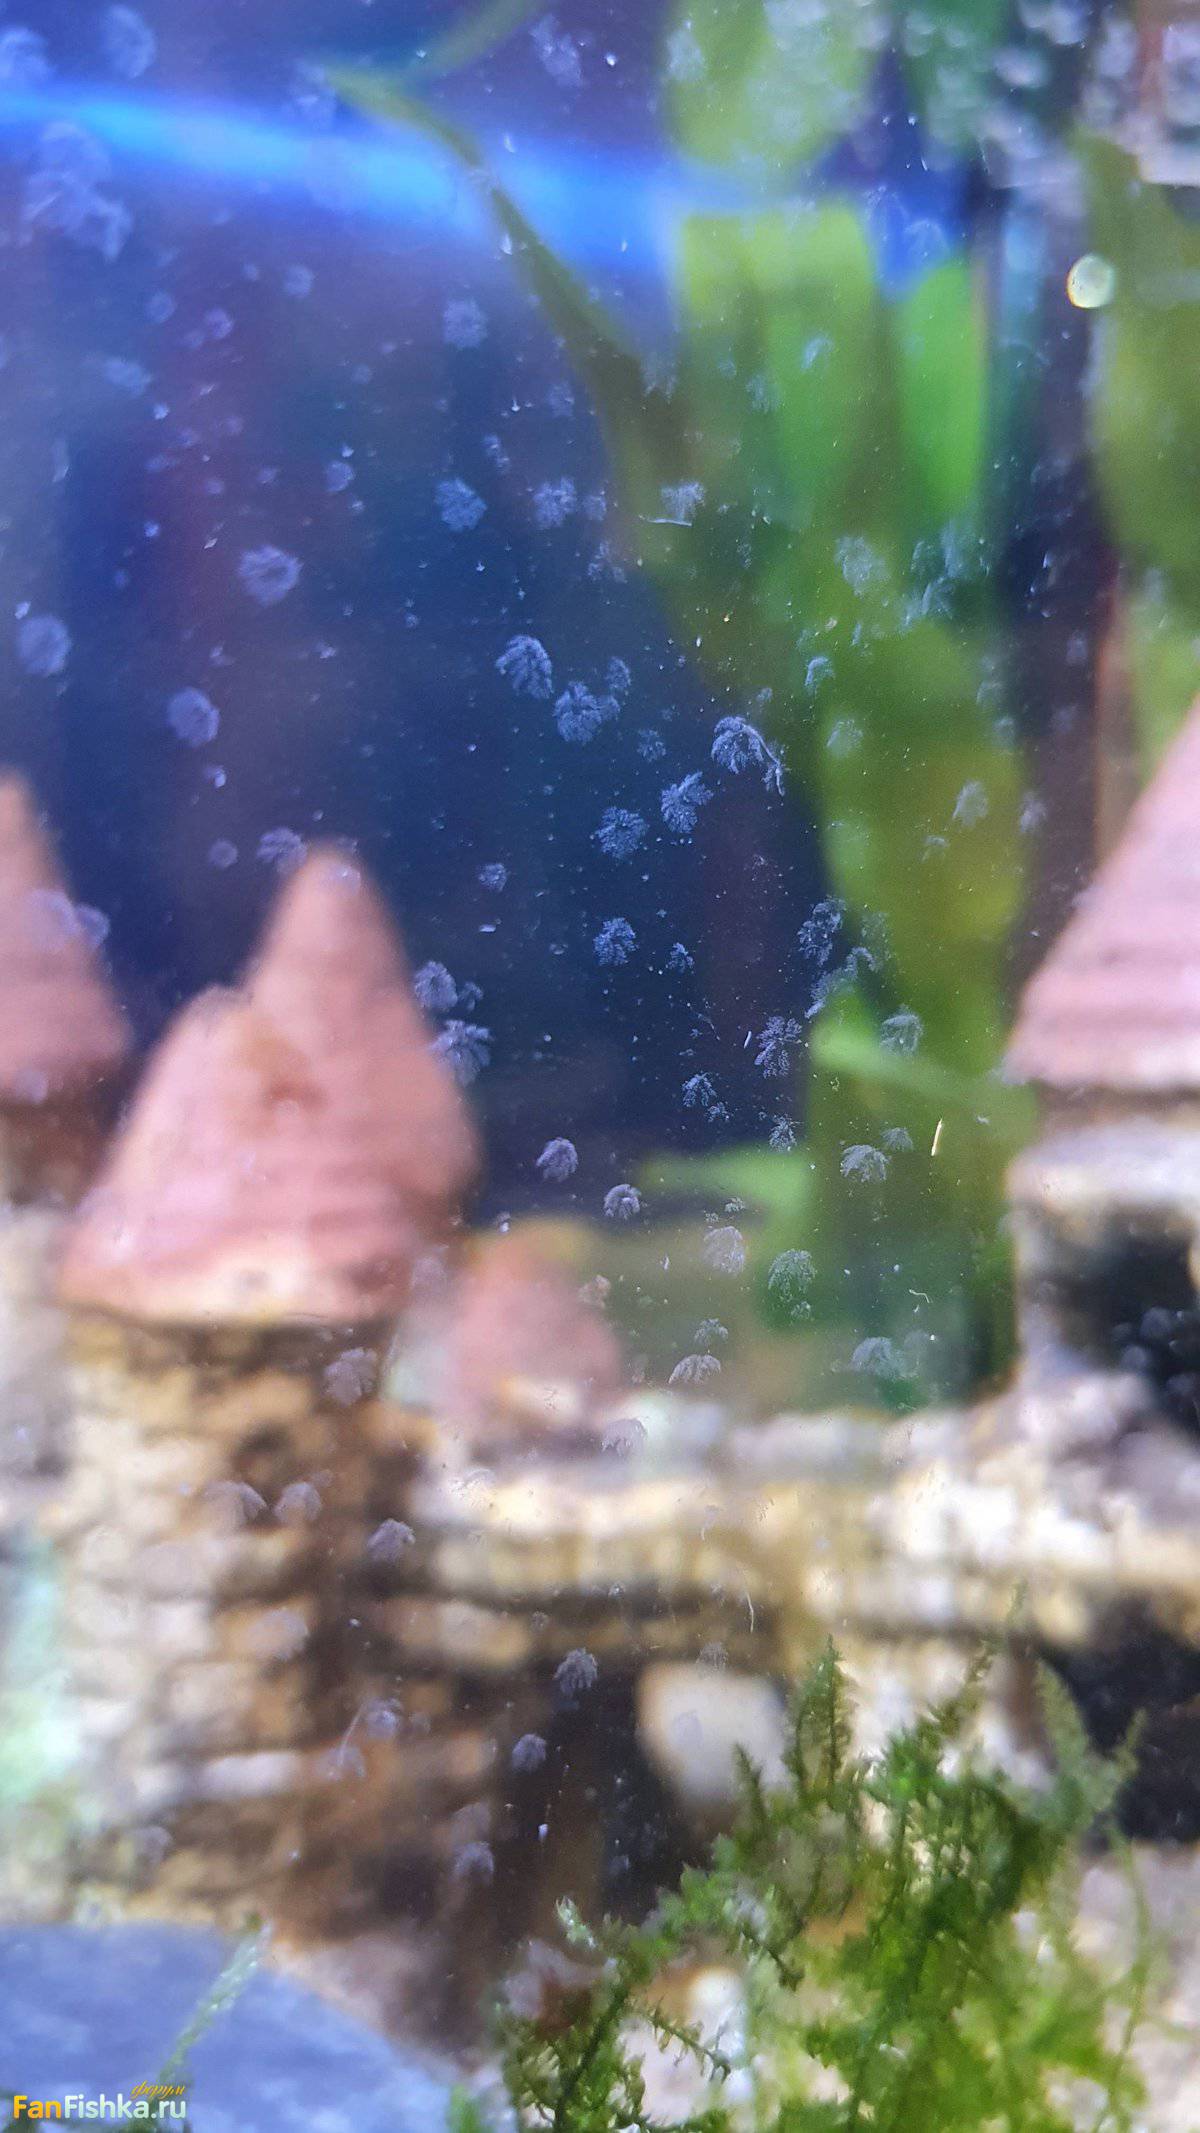 Белые маленькие черви на стенках аквариума